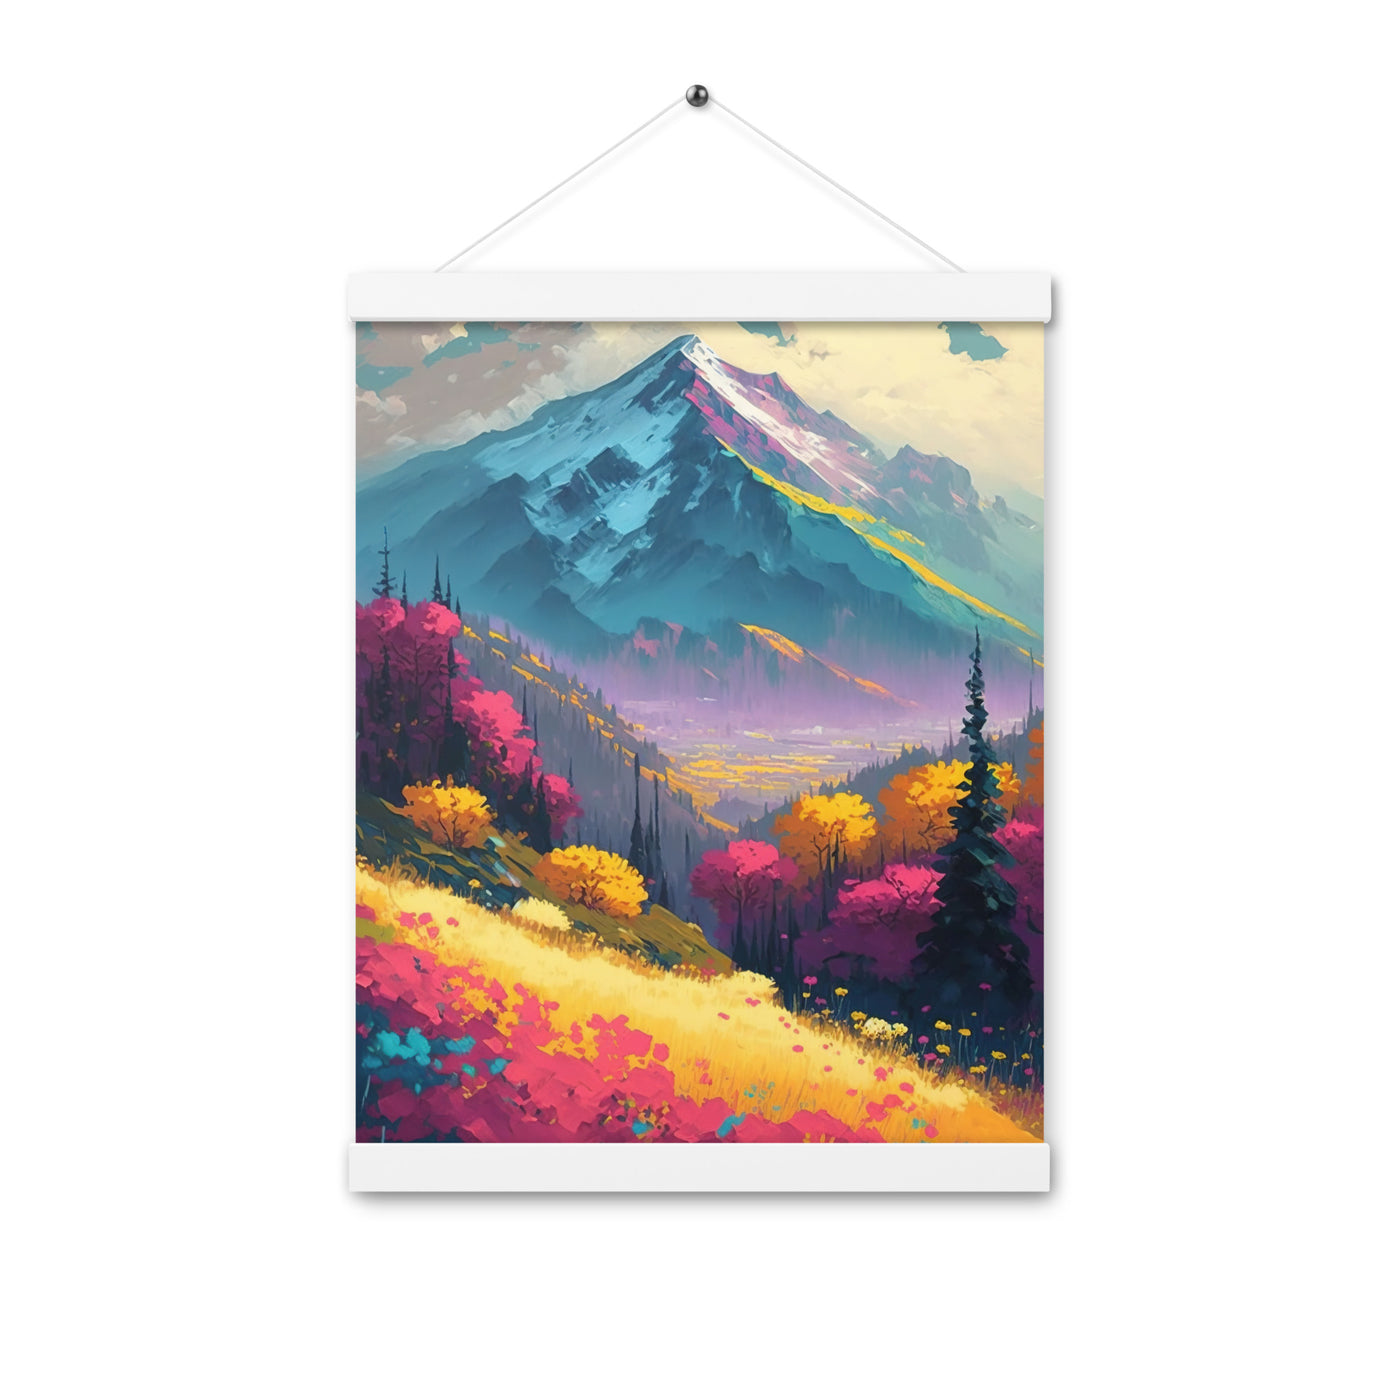 Berge, pinke und gelbe Bäume, sowie Blumen - Farbige Malerei - Premium Poster mit Aufhängung berge xxx 30.5 x 40.6 cm